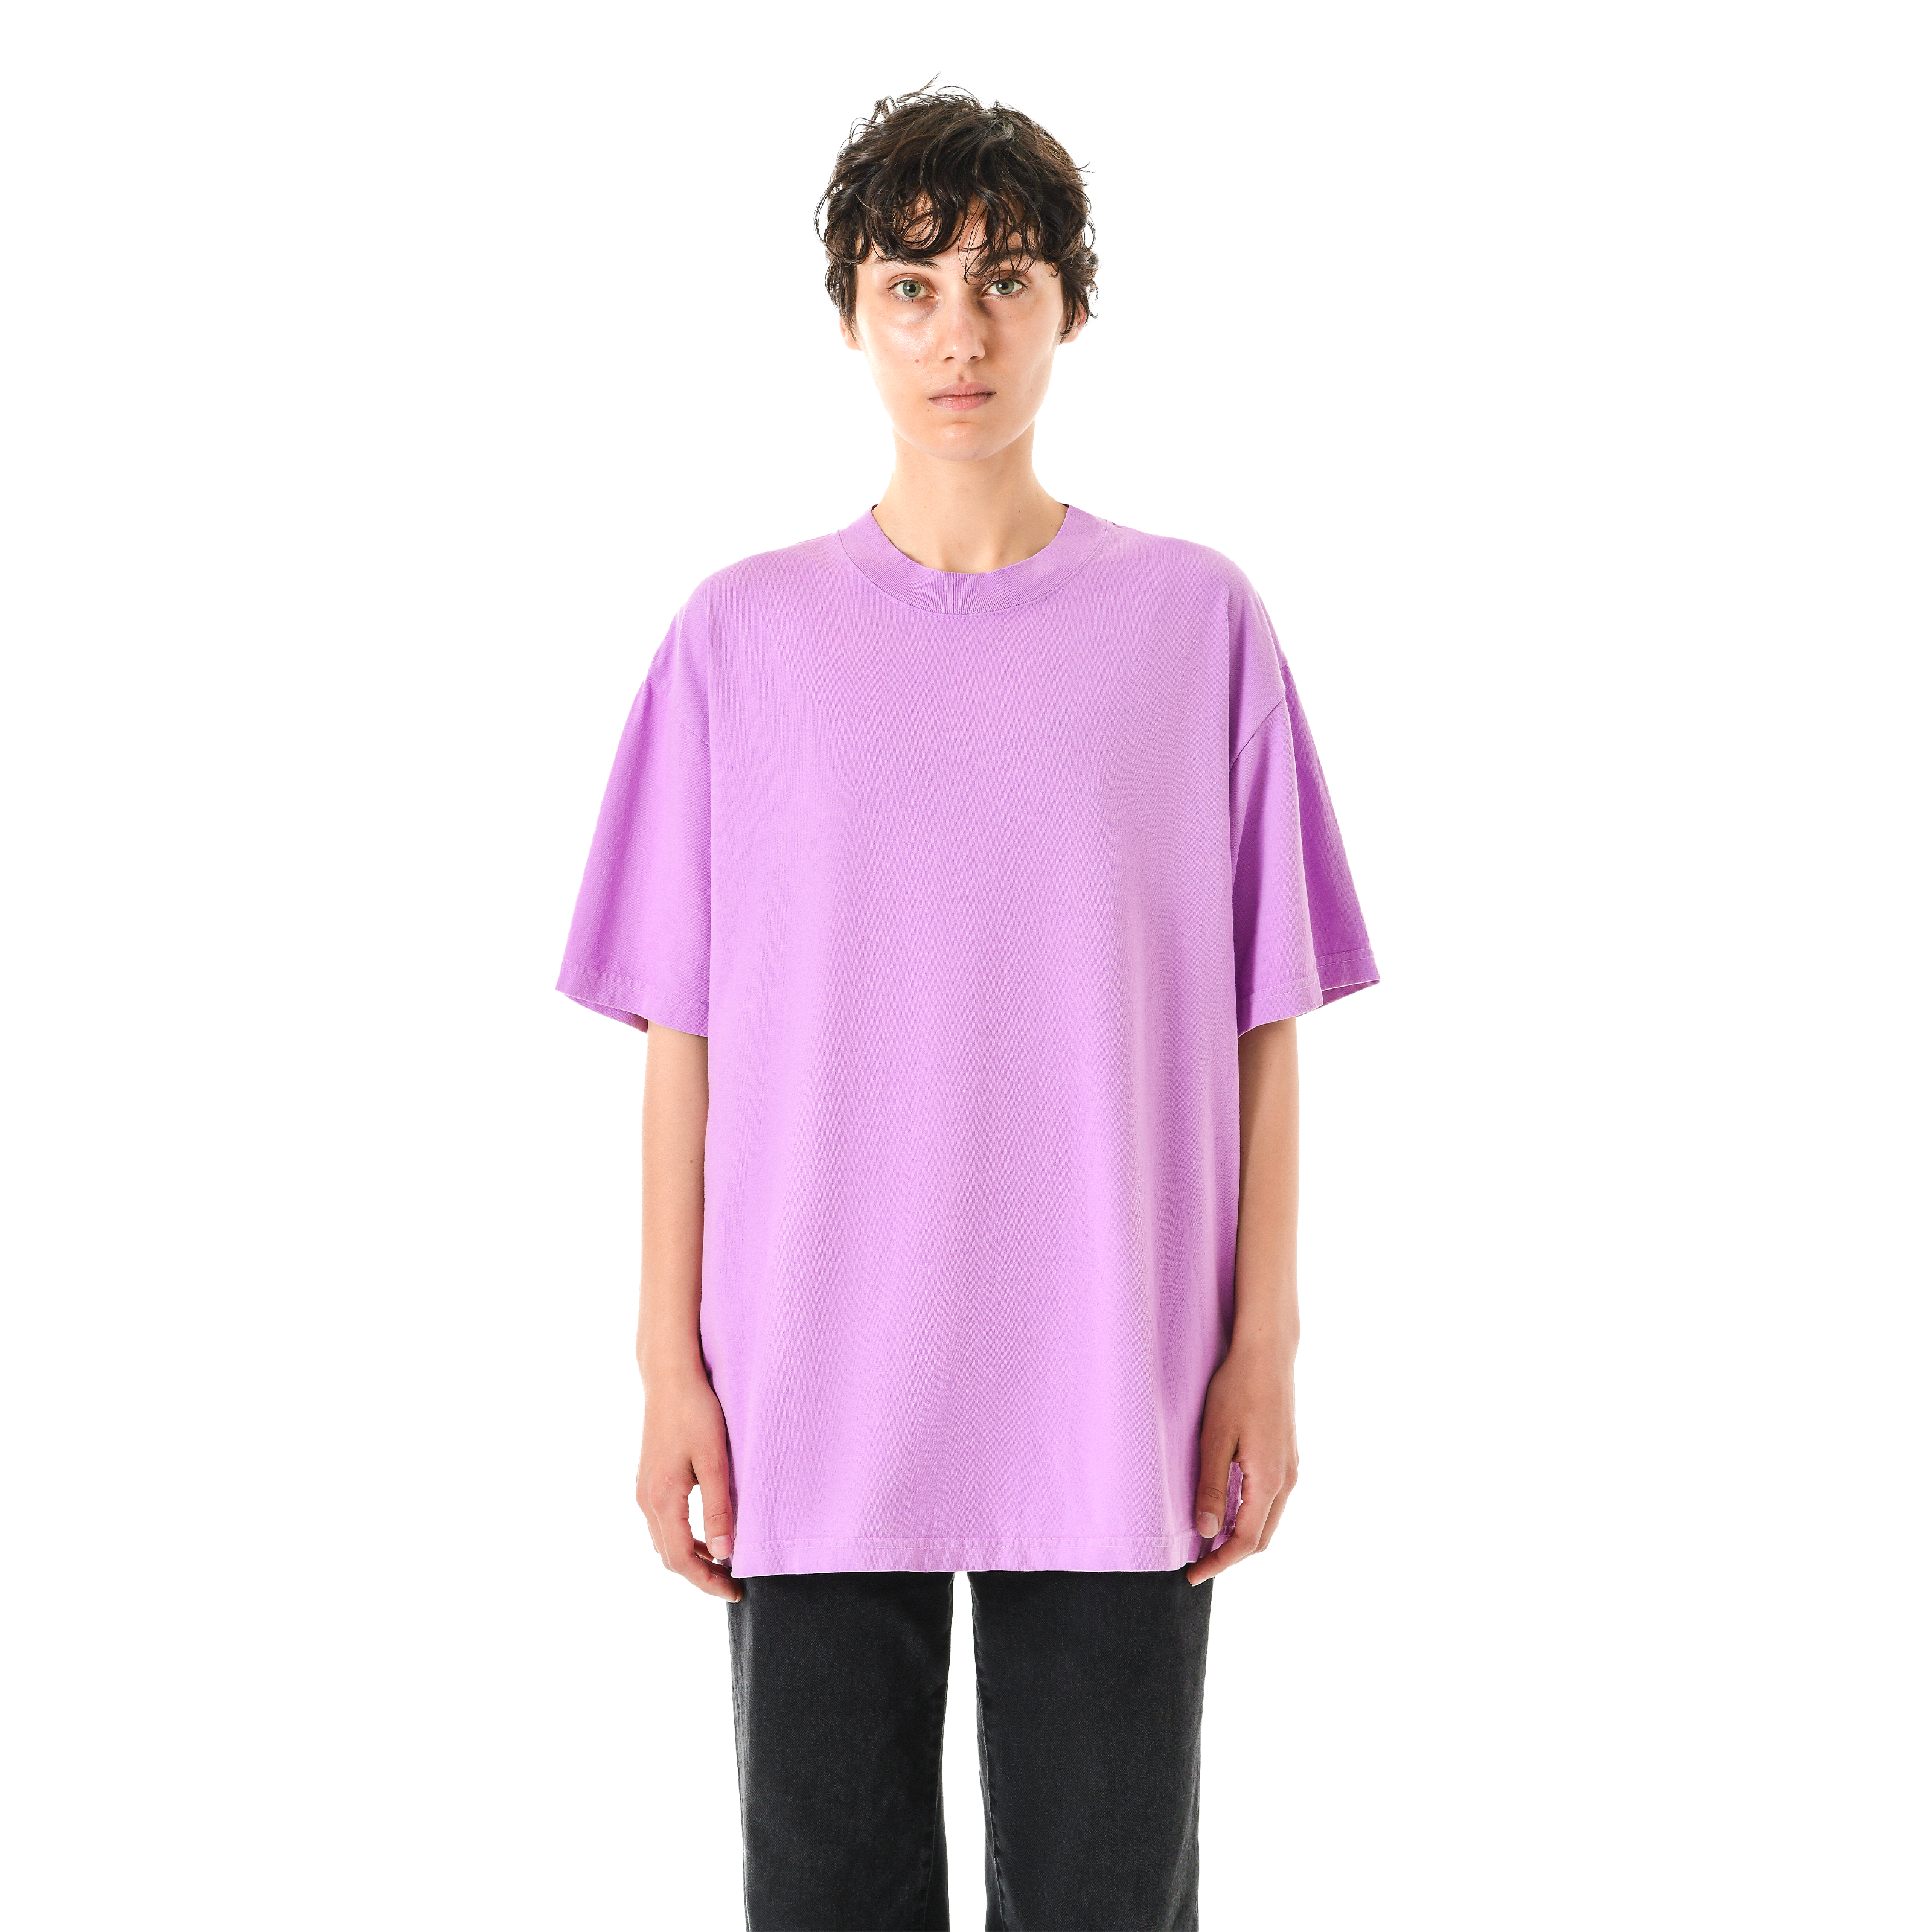 Garment Dye T-Shirt - Standard Size - Pastel Purple